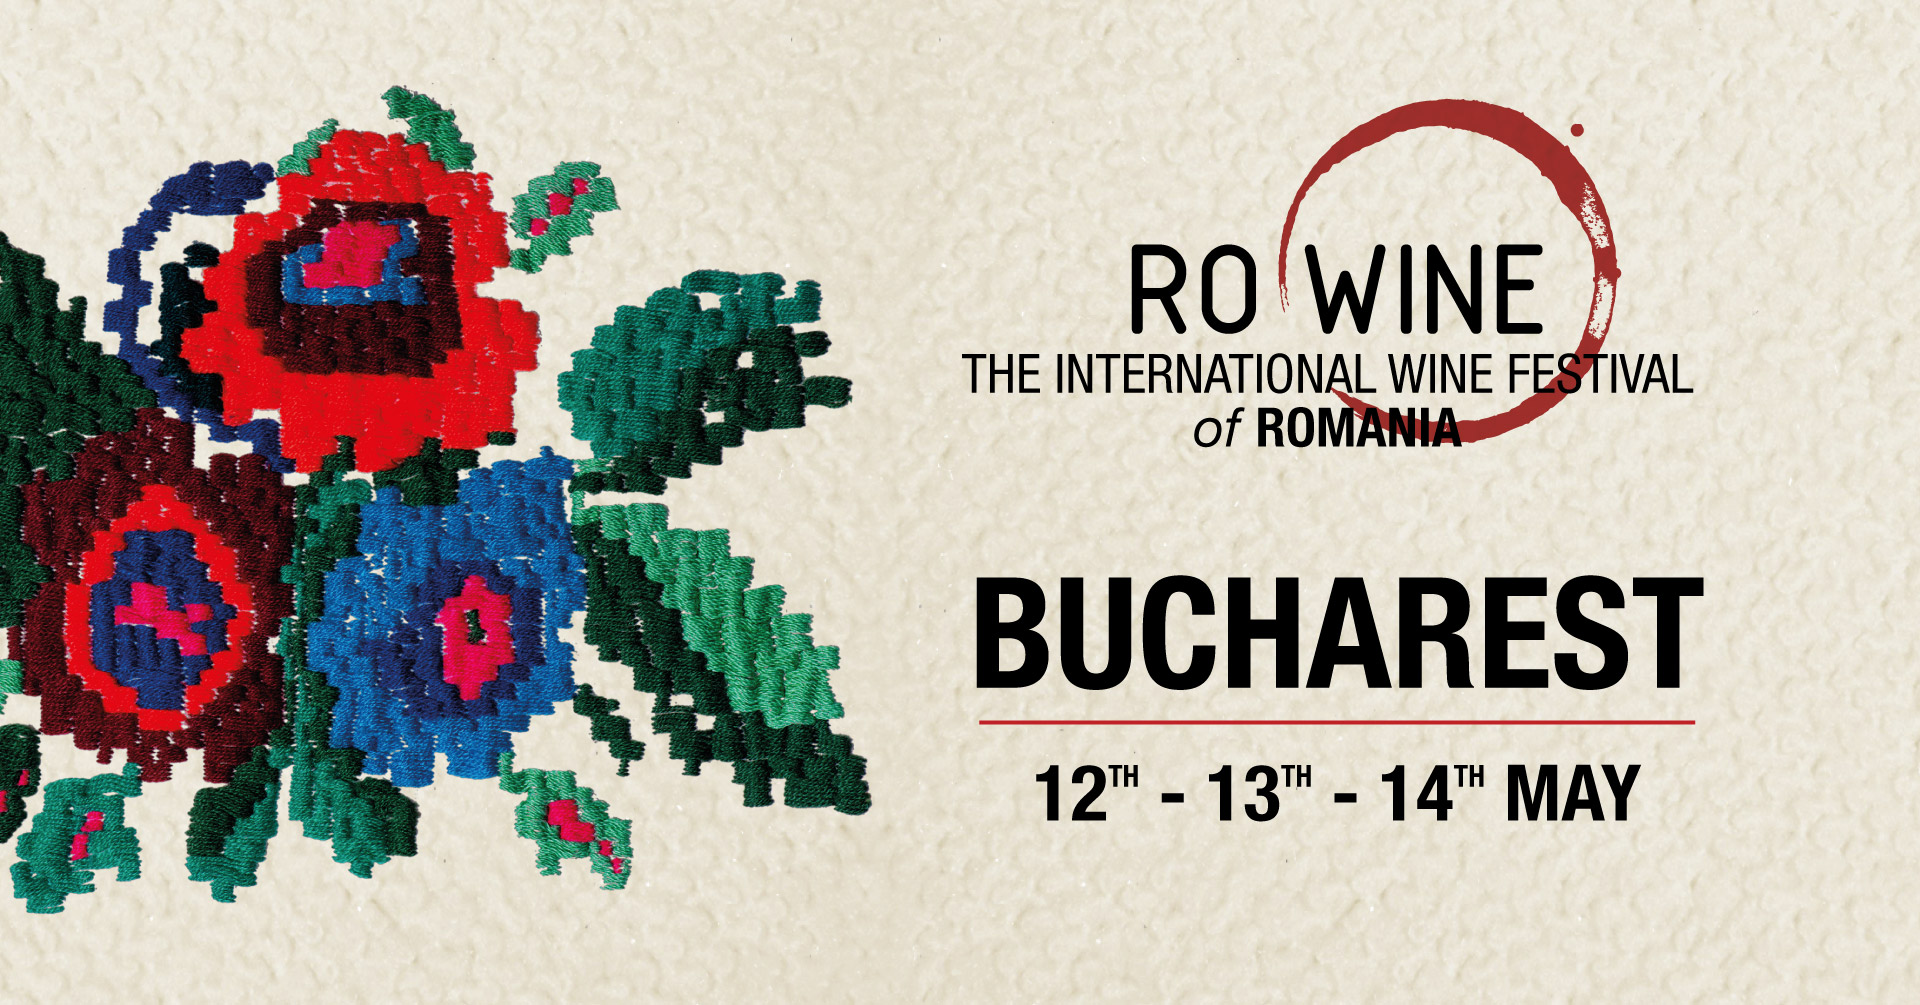 RO-Wine l The International Wine Festival of Romania București